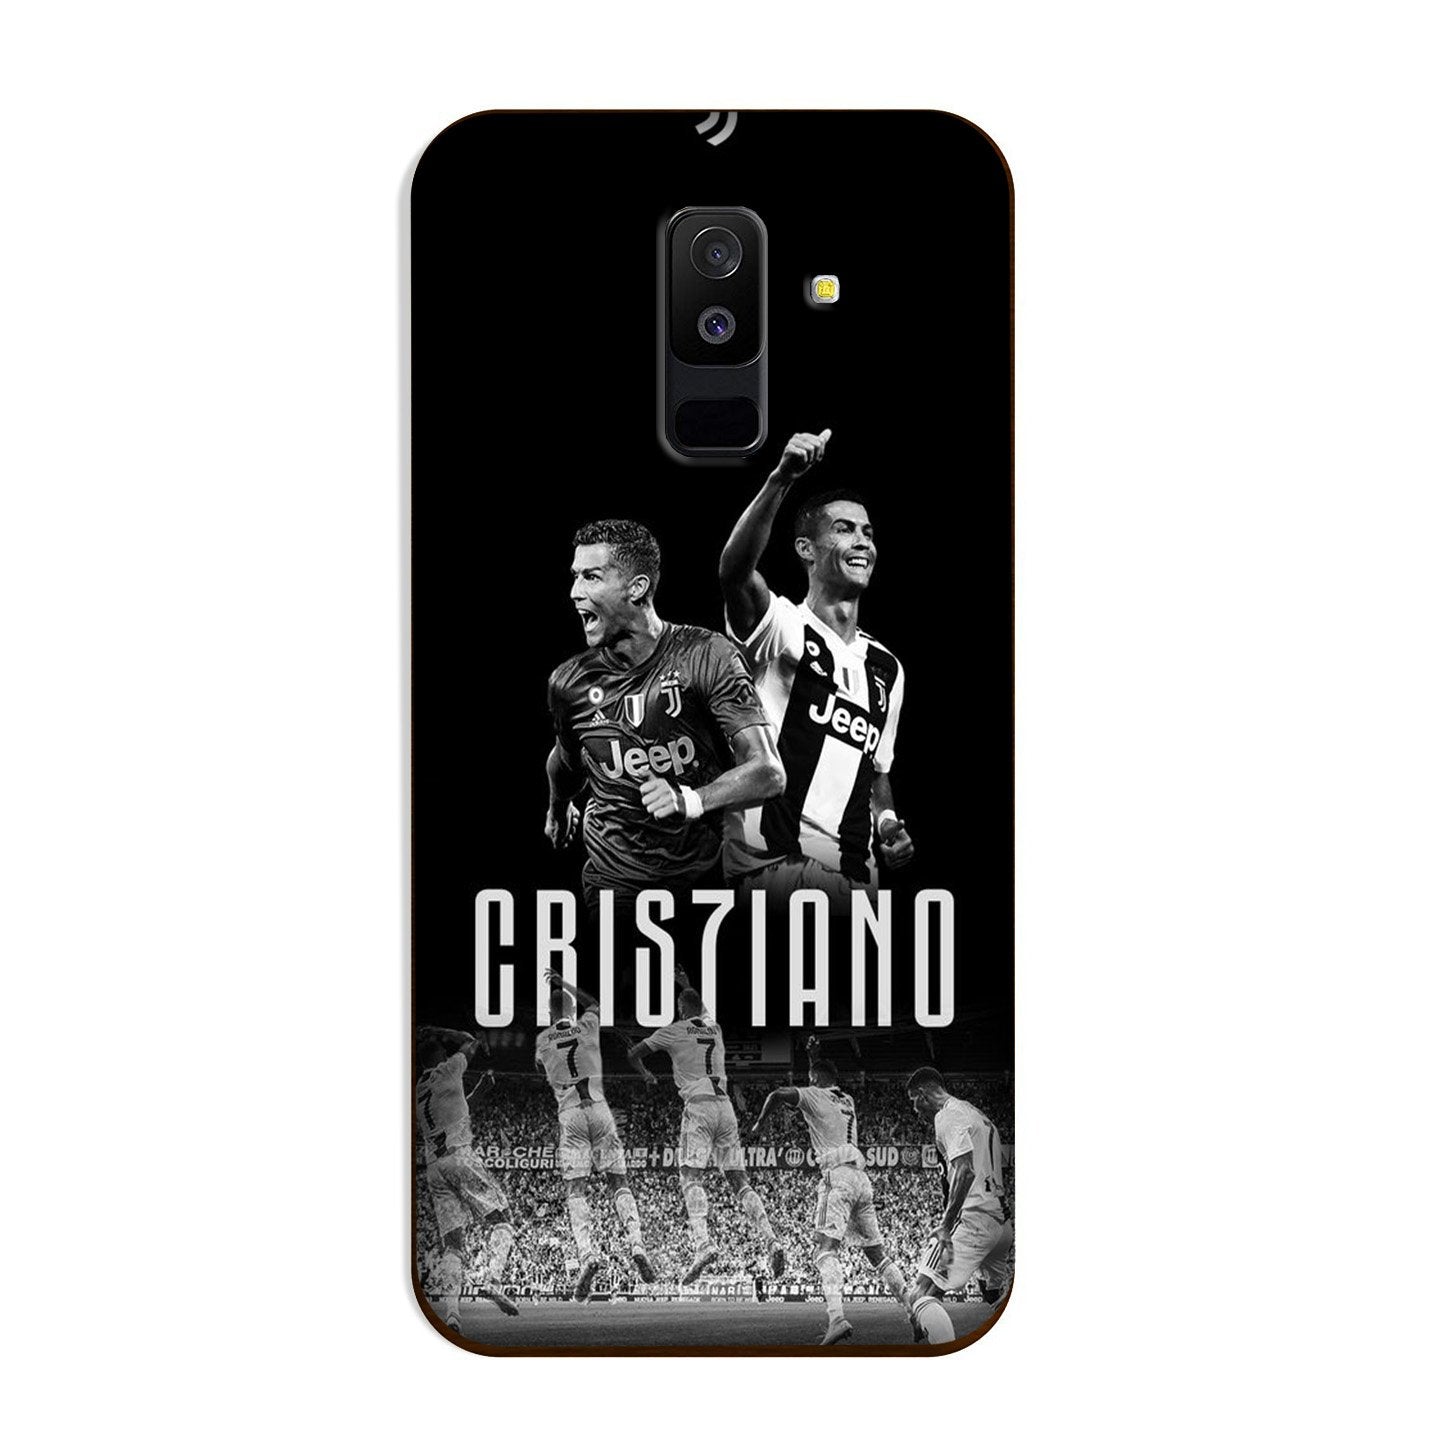 Cristiano Case for Galaxy J8(Design - 165)